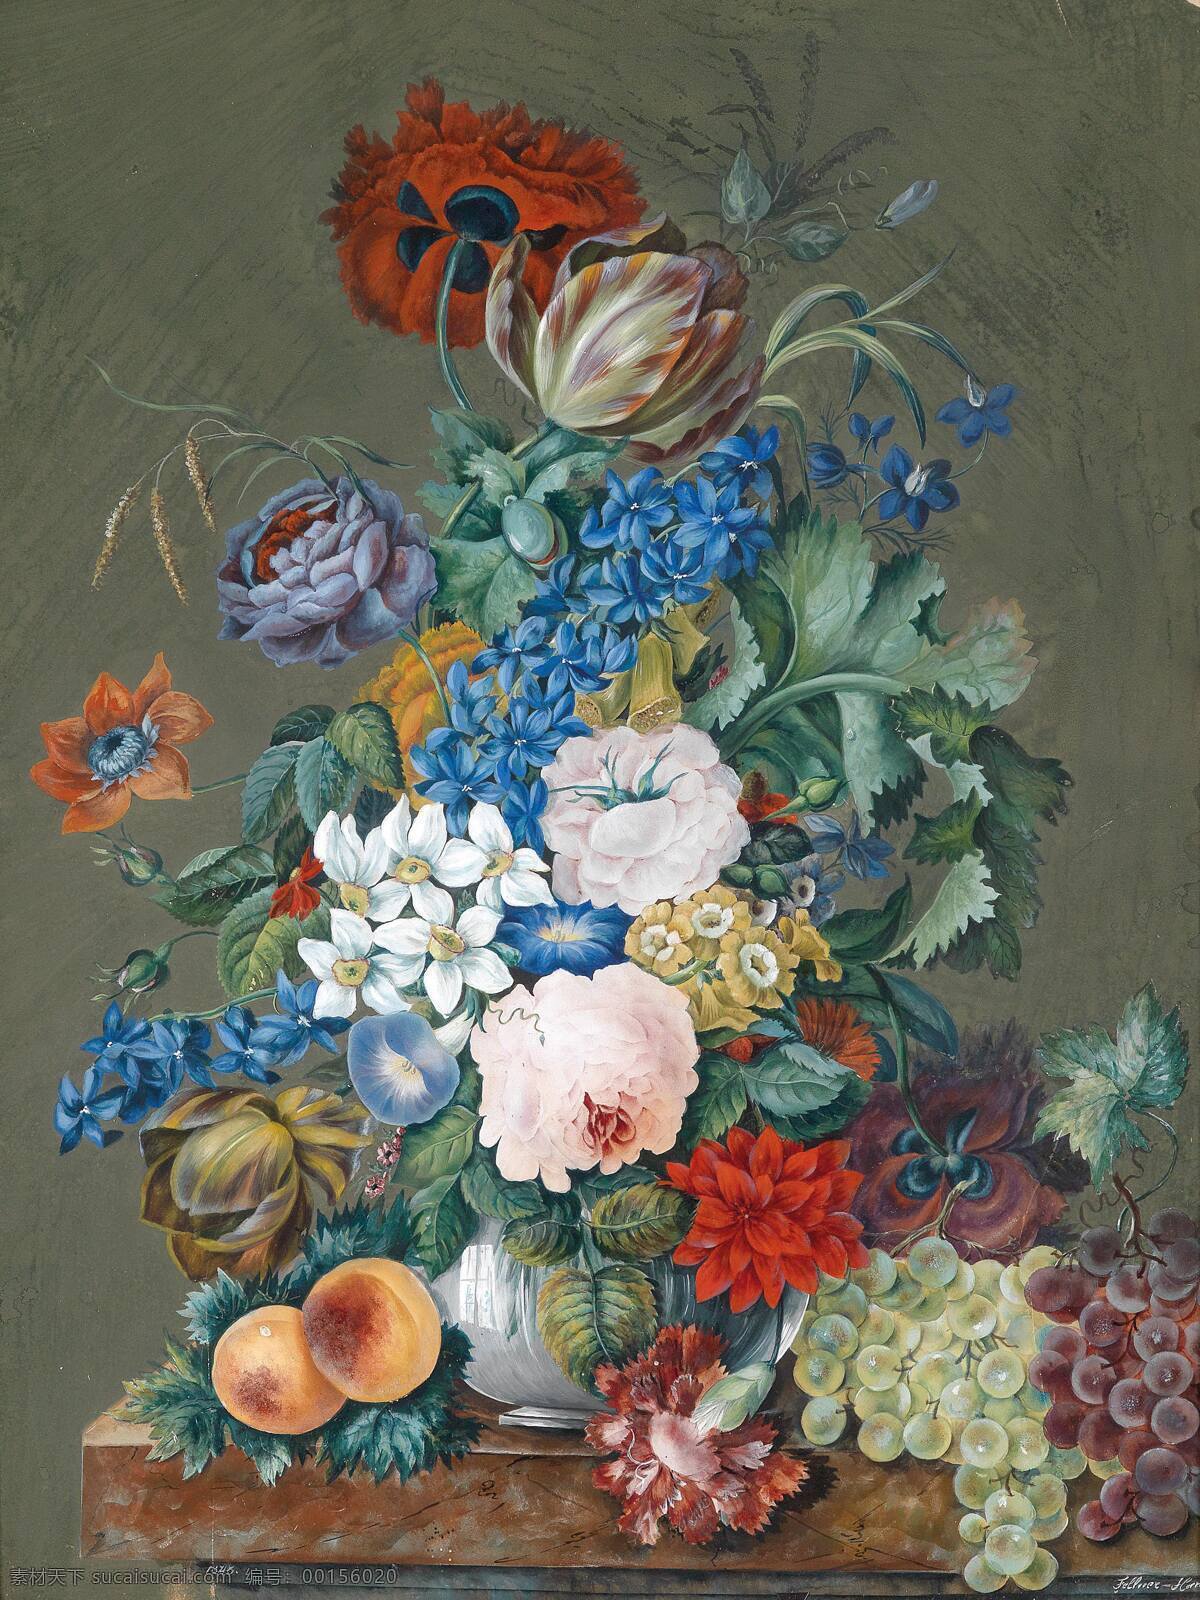 静物 油画 奥地利画家 混搭鲜花 水果 永恒之美 世纪 水彩画 绘画书法 文化艺术